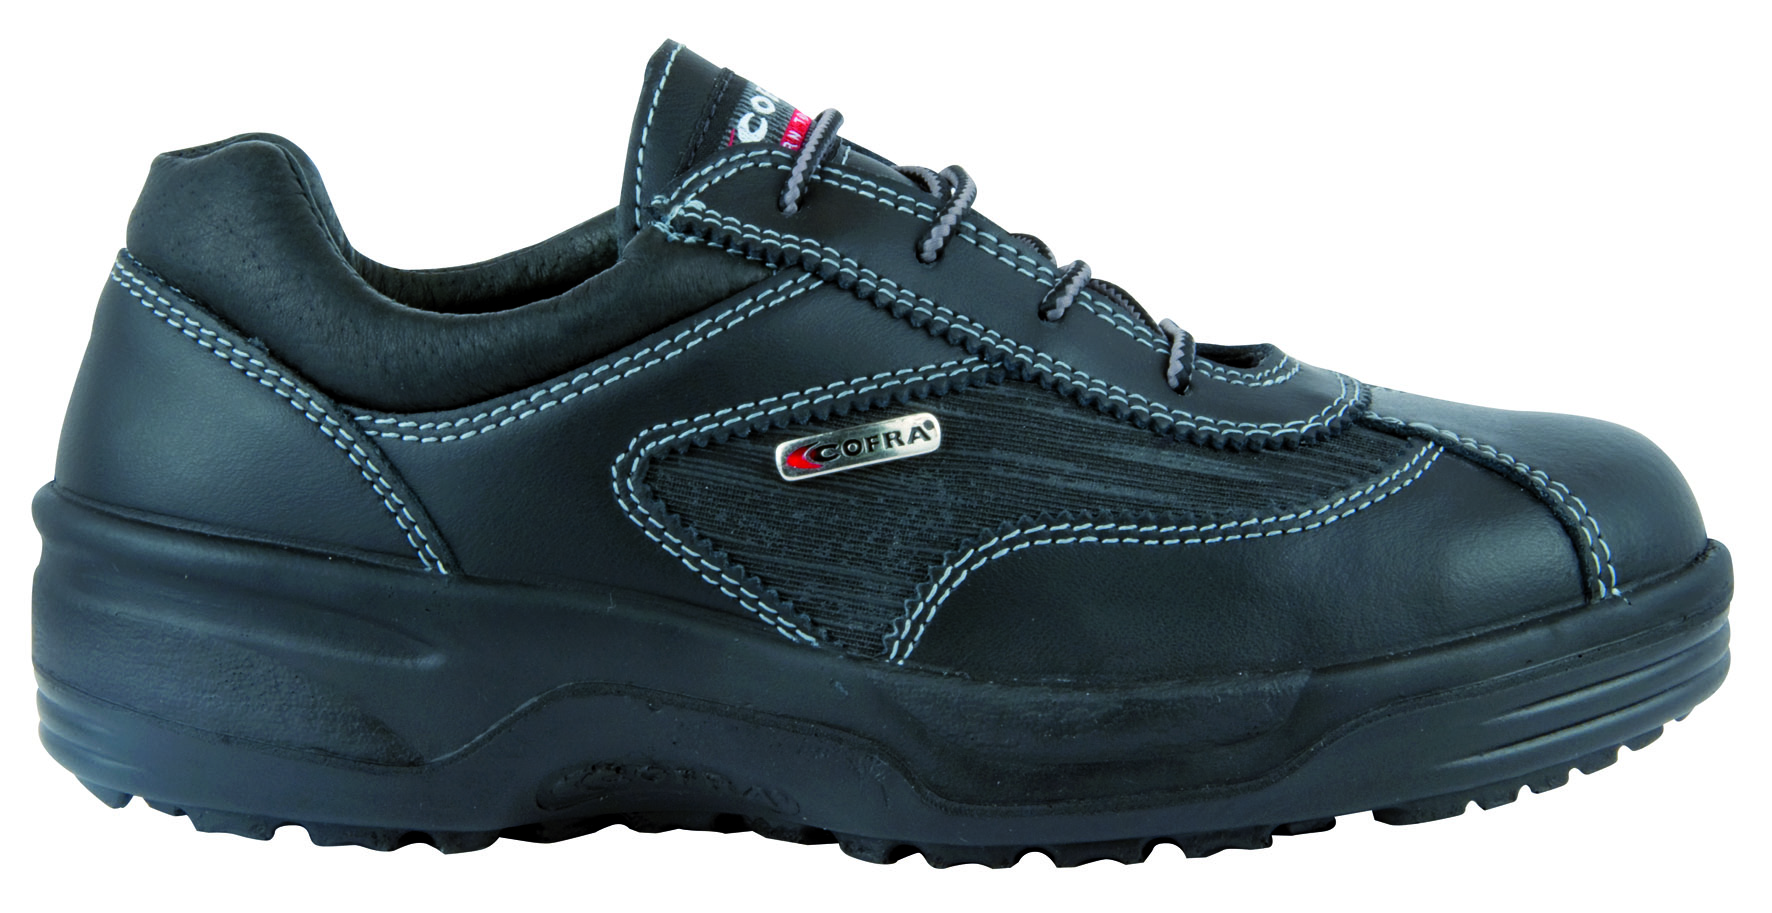 COFRA-Footwear, SOPHIE BLACK S3 SRC, Damen-Sicherheits-Arbeits-Berufs-Schuhe, Halbschuhe, schwarz